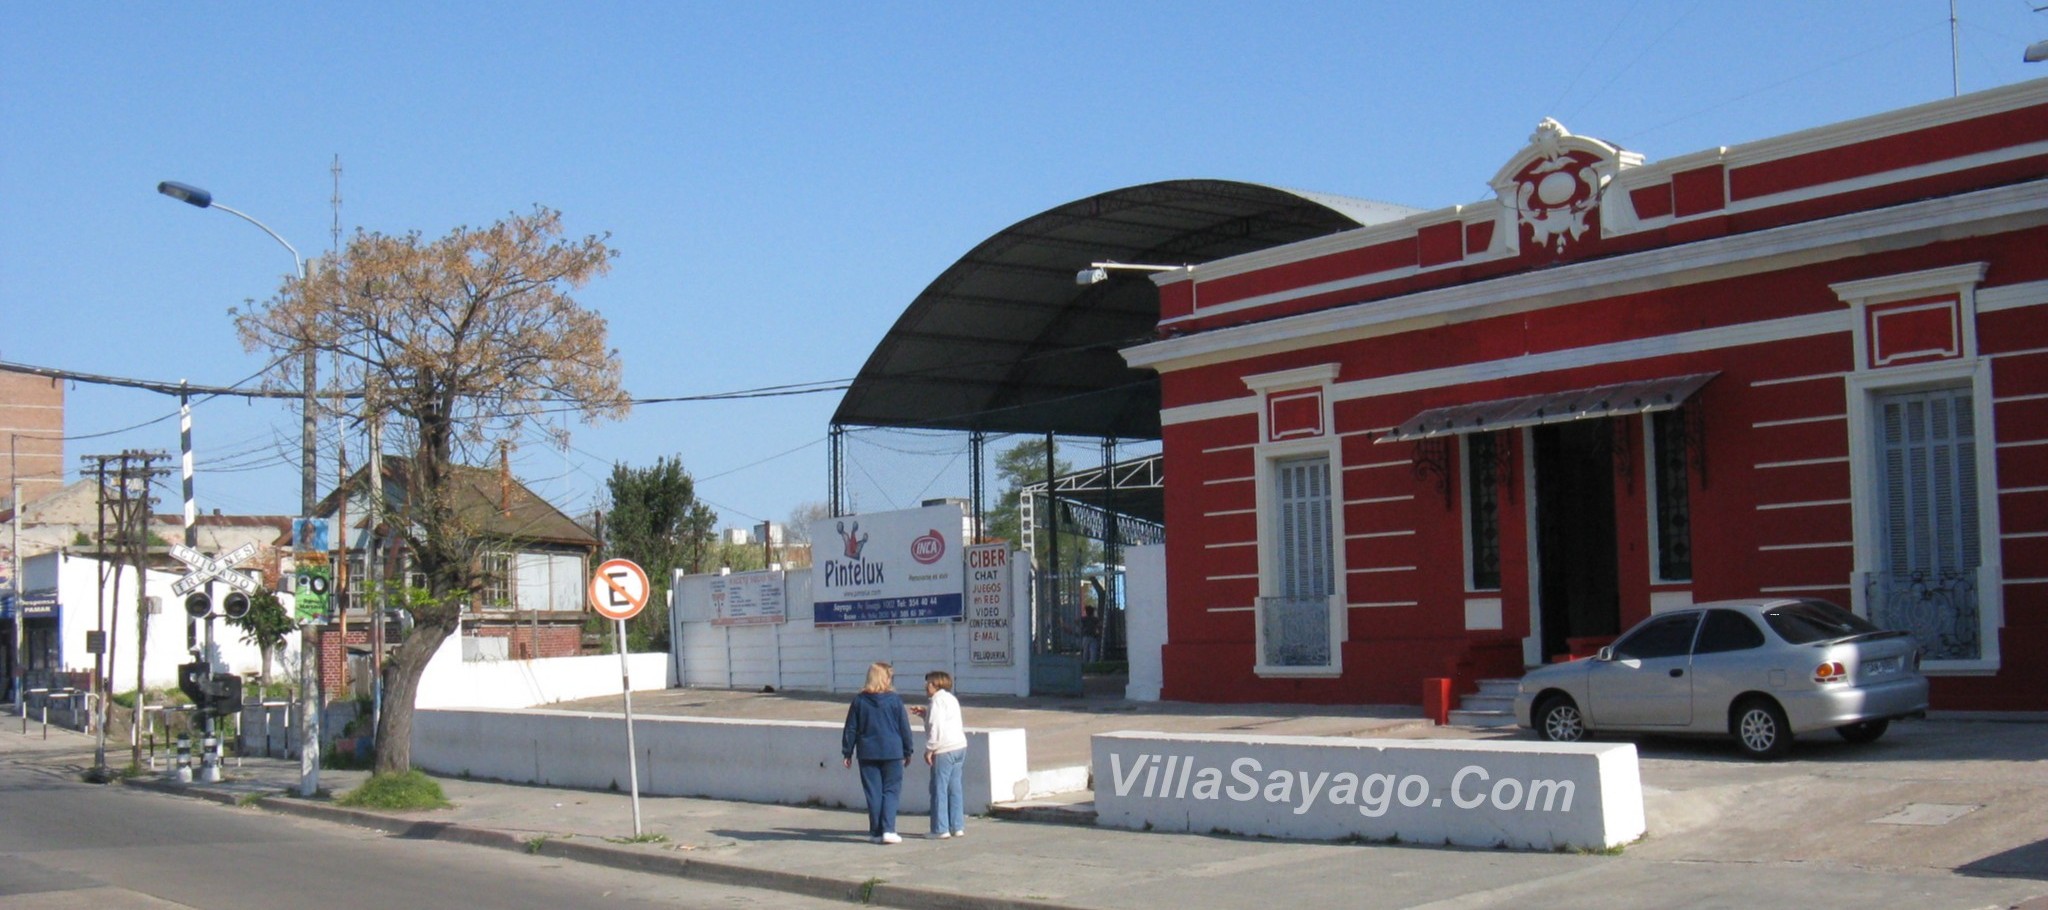 90 años del Club Sayago, casi nada! | Villa Sayago